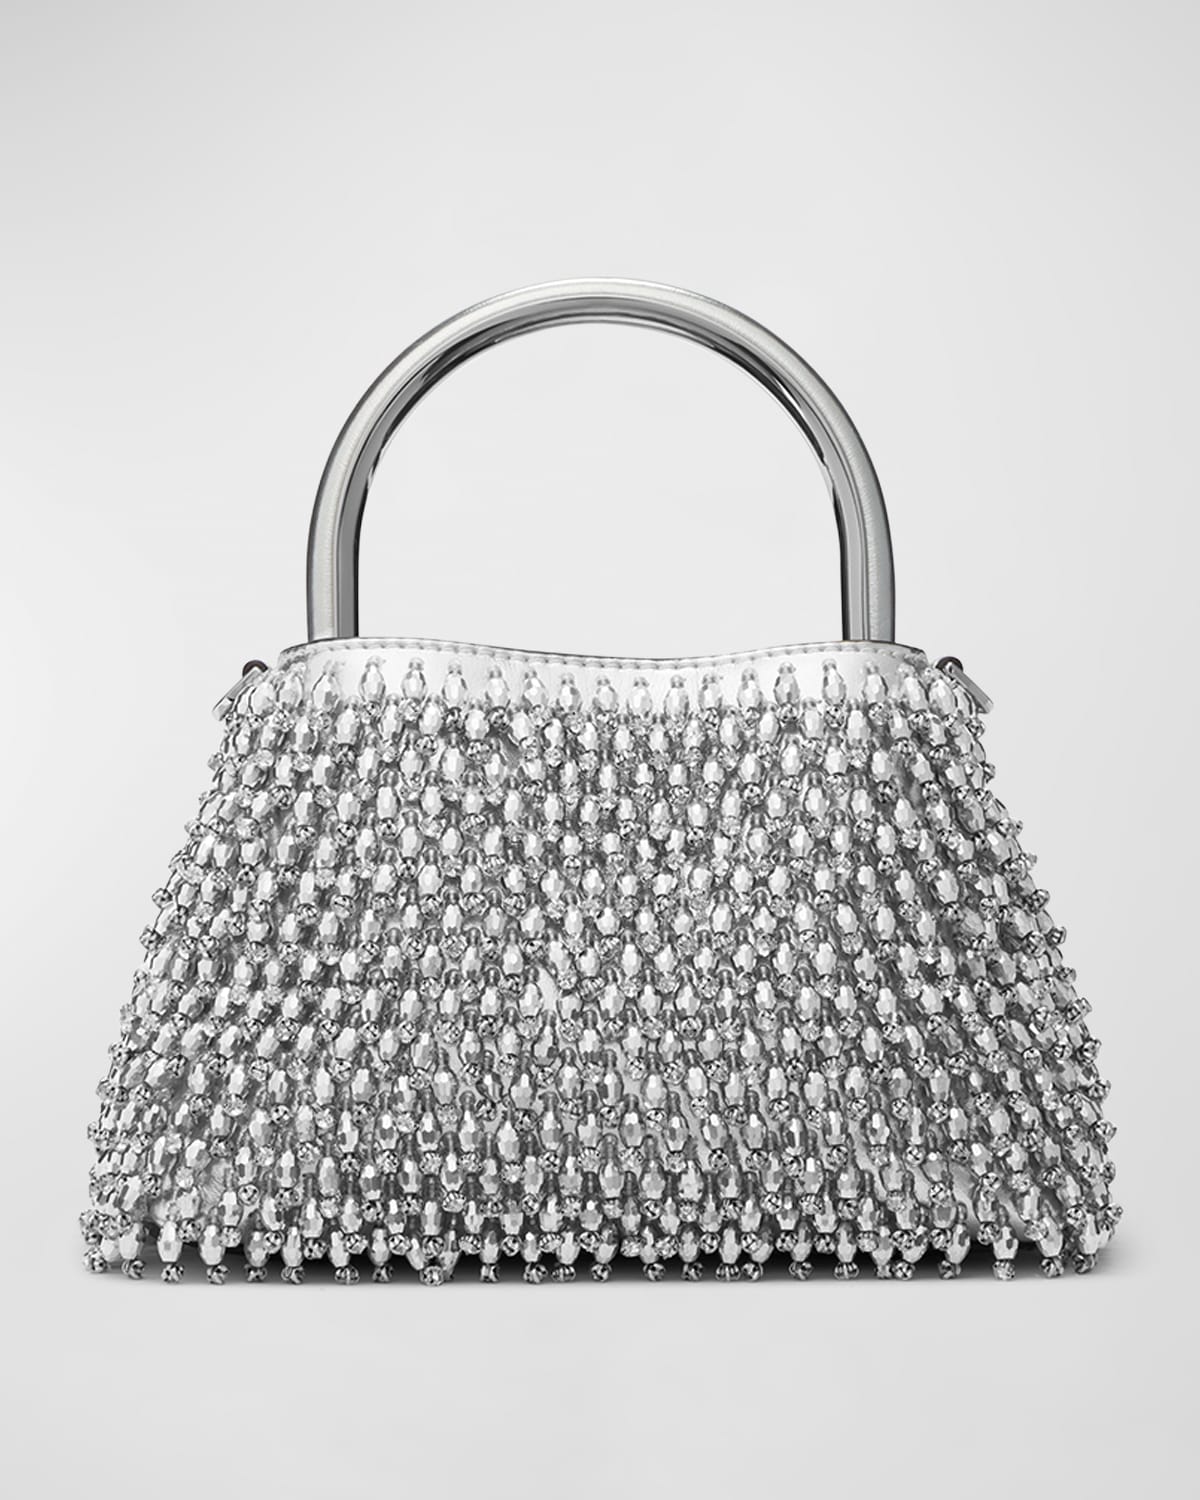 MICHAEL Kors Small Crystal-Embellished Shoulder Bag | Smart Closet